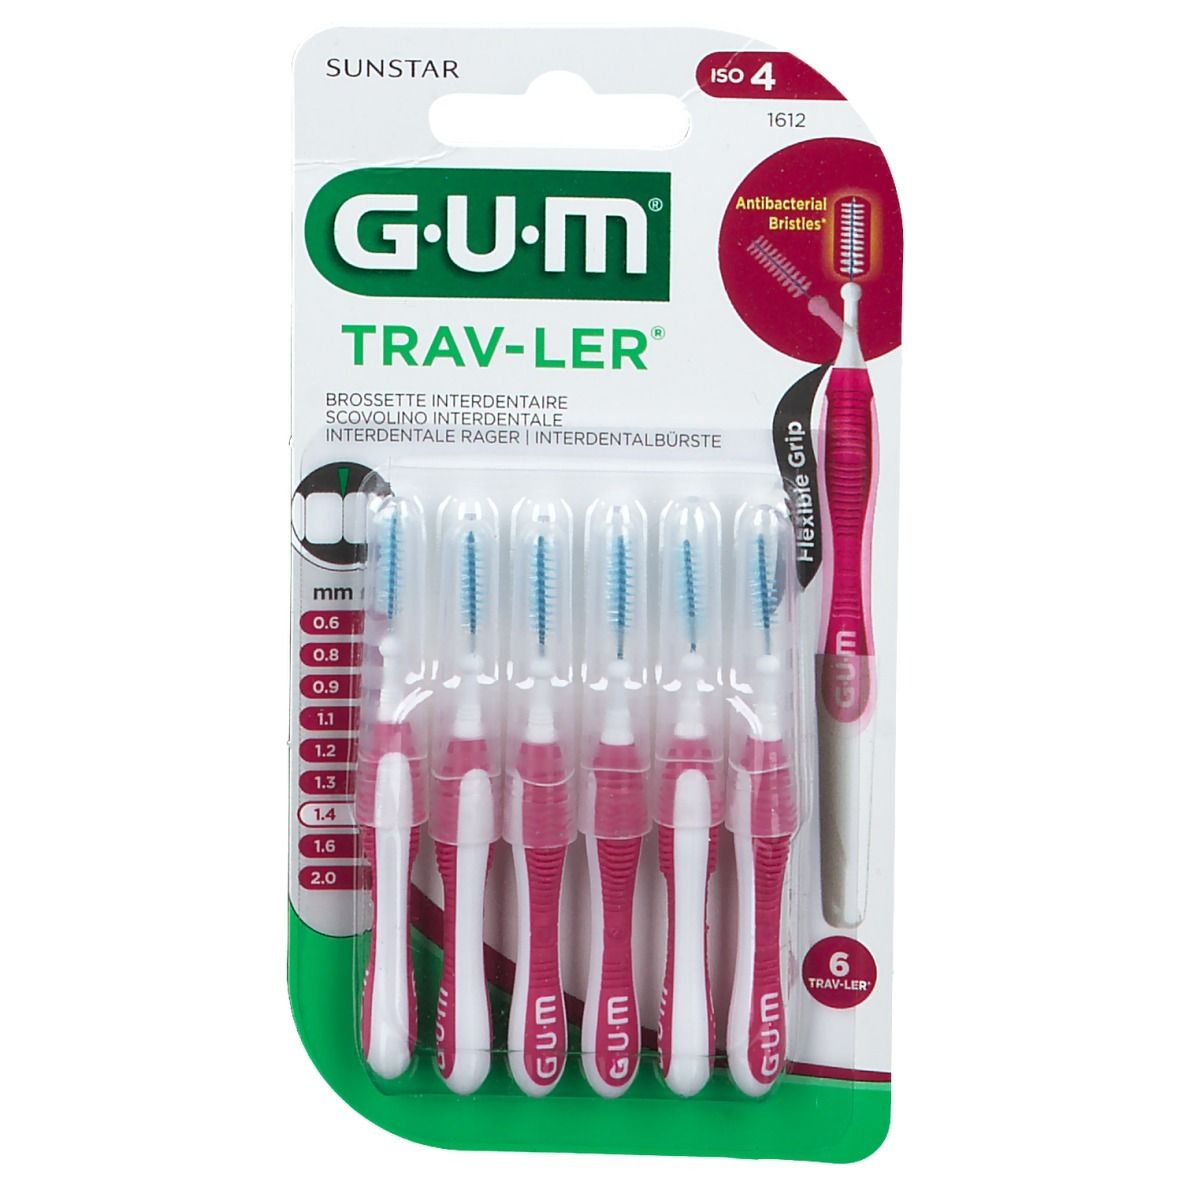 Gum® Trav-Ler® Interdentalbürsten 1,4 mm rosa mit Kappe